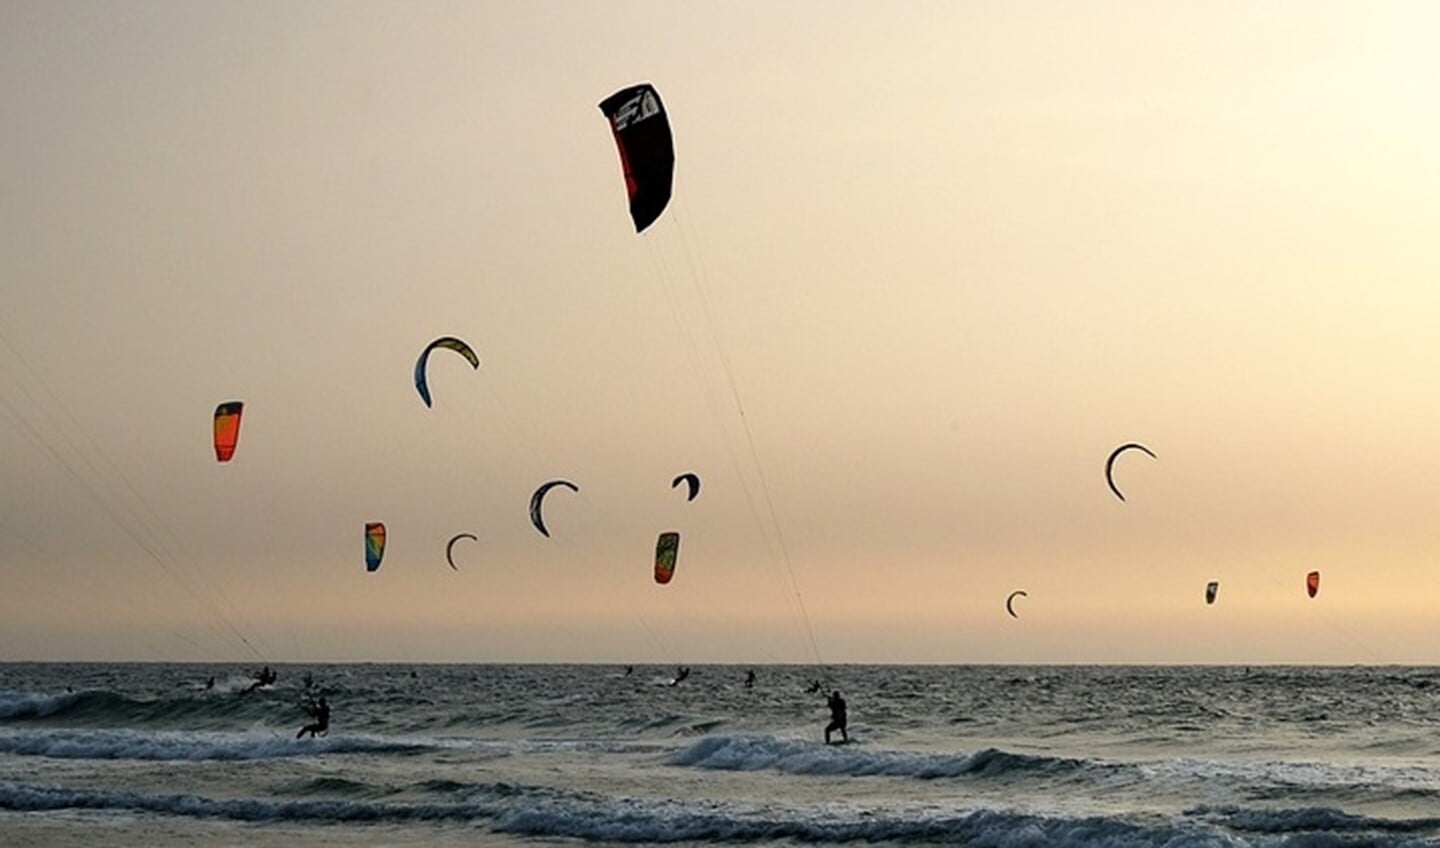 Het kitesurfen op de Maasvlakte wordt bedreigd door de plannen